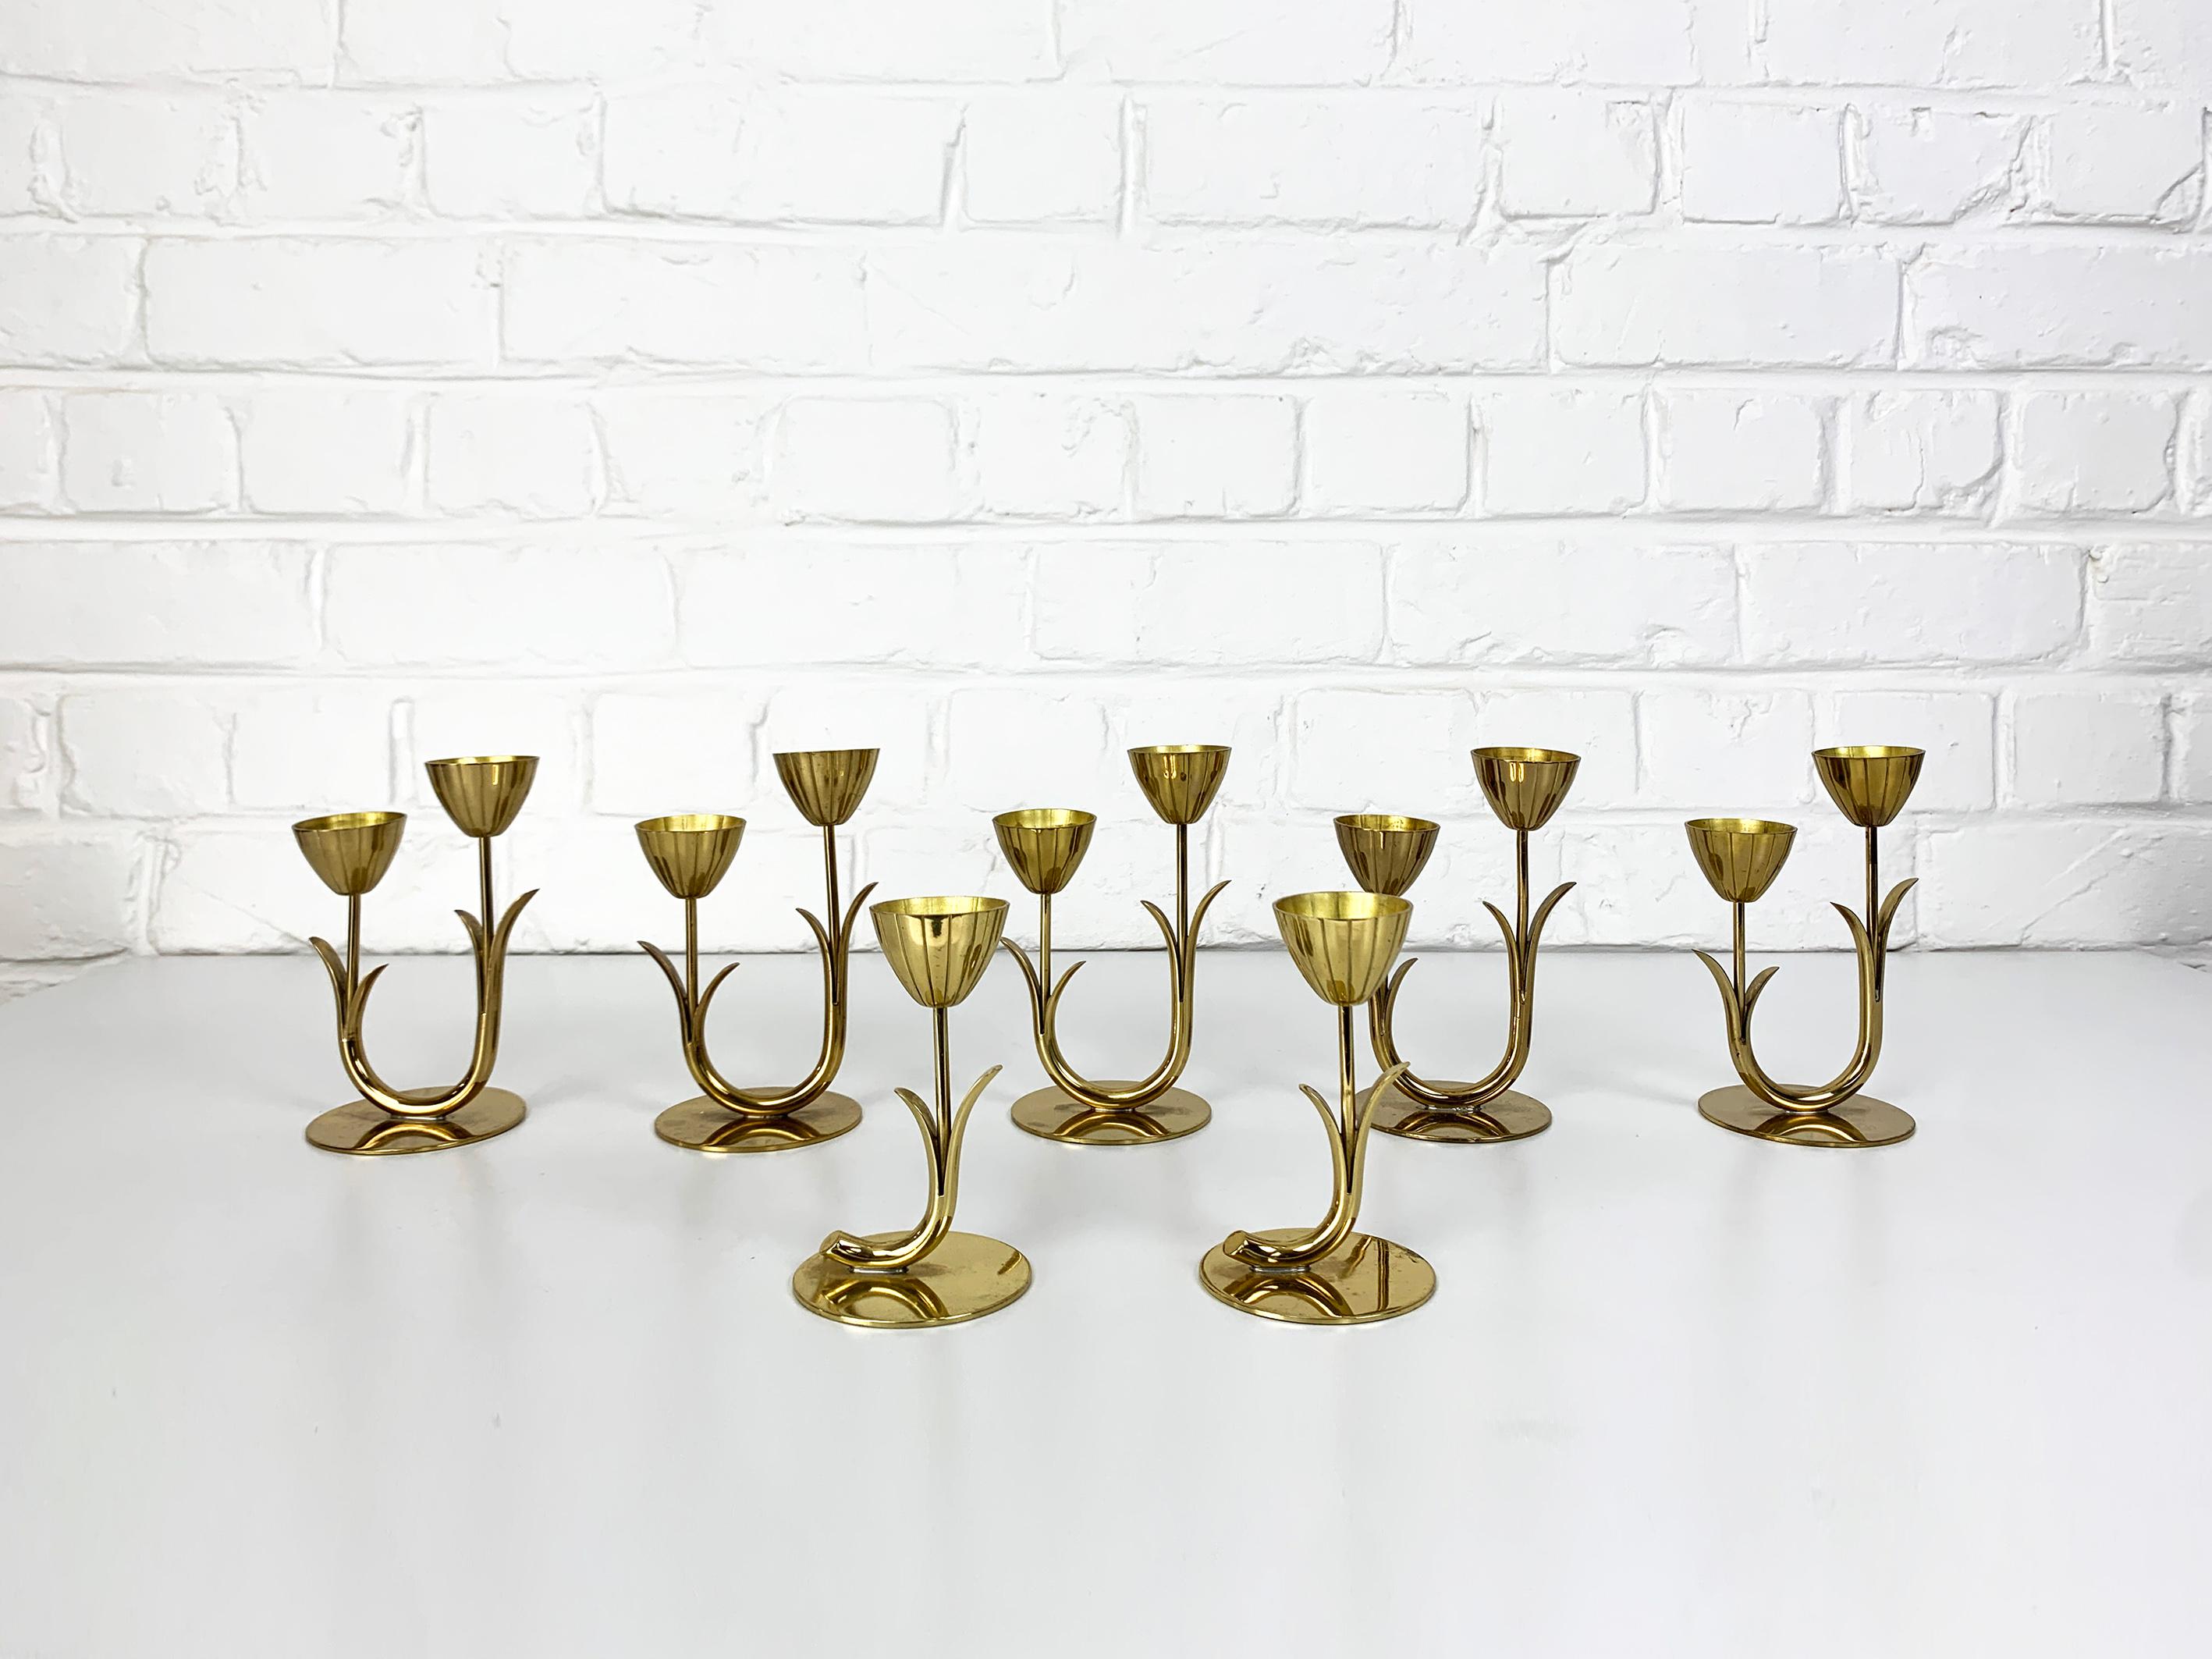 Ensemble de 7 candélabres modernistes suédois par Gunnar Ander. Produit par Ystad-Metall, situé dans la ville d'Ystad en Suède. 

Bougeoirs en laiton massif. Design/One de fleurs et de feuilles stylisées attachées à une tige courbée et placées sur